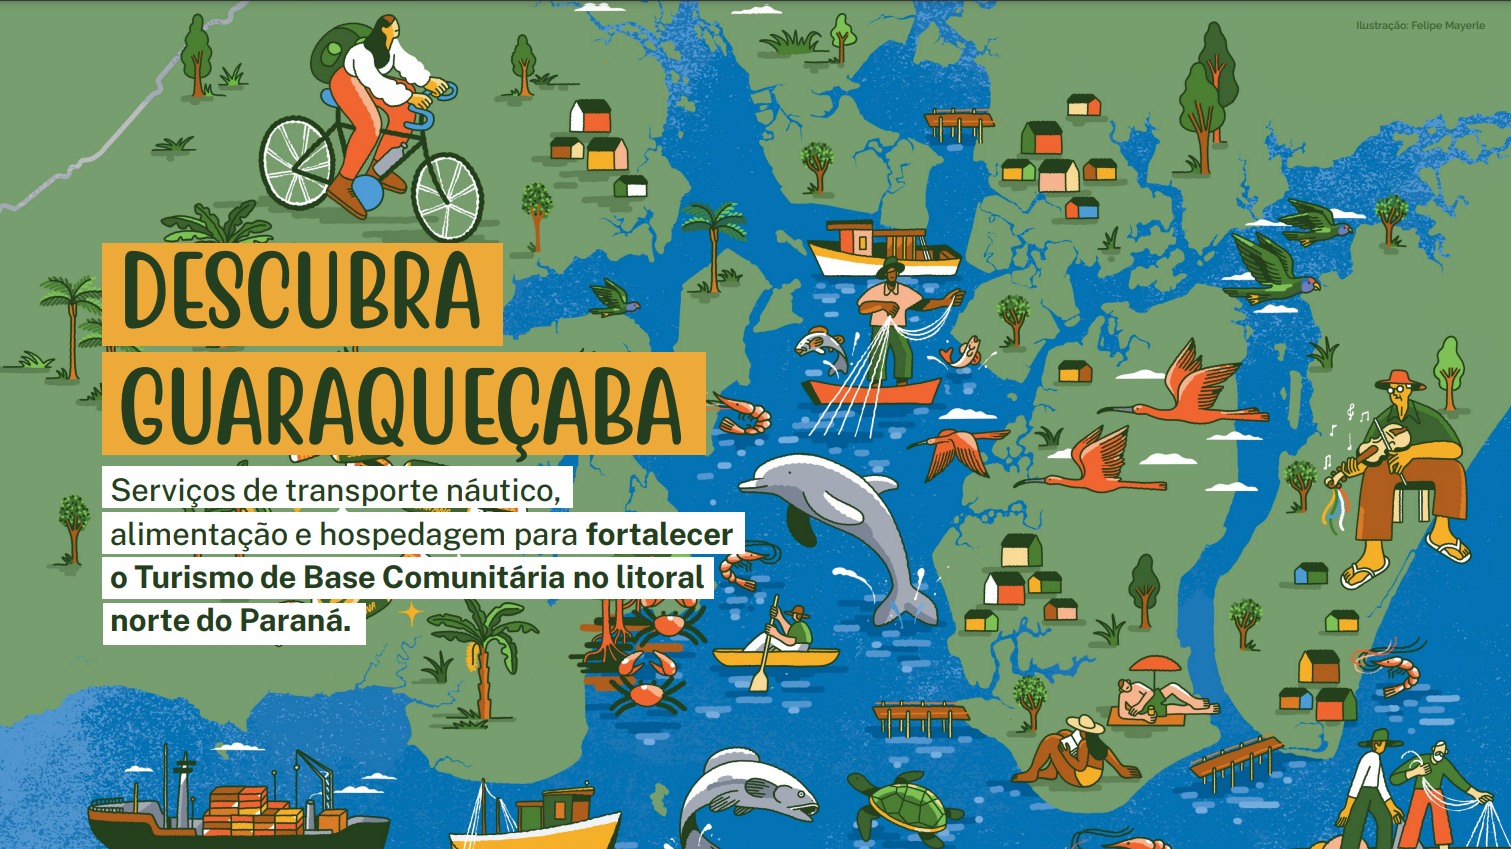 Mapa ilustrado promove Turismo de Base Comunitária no litoral do Paraná